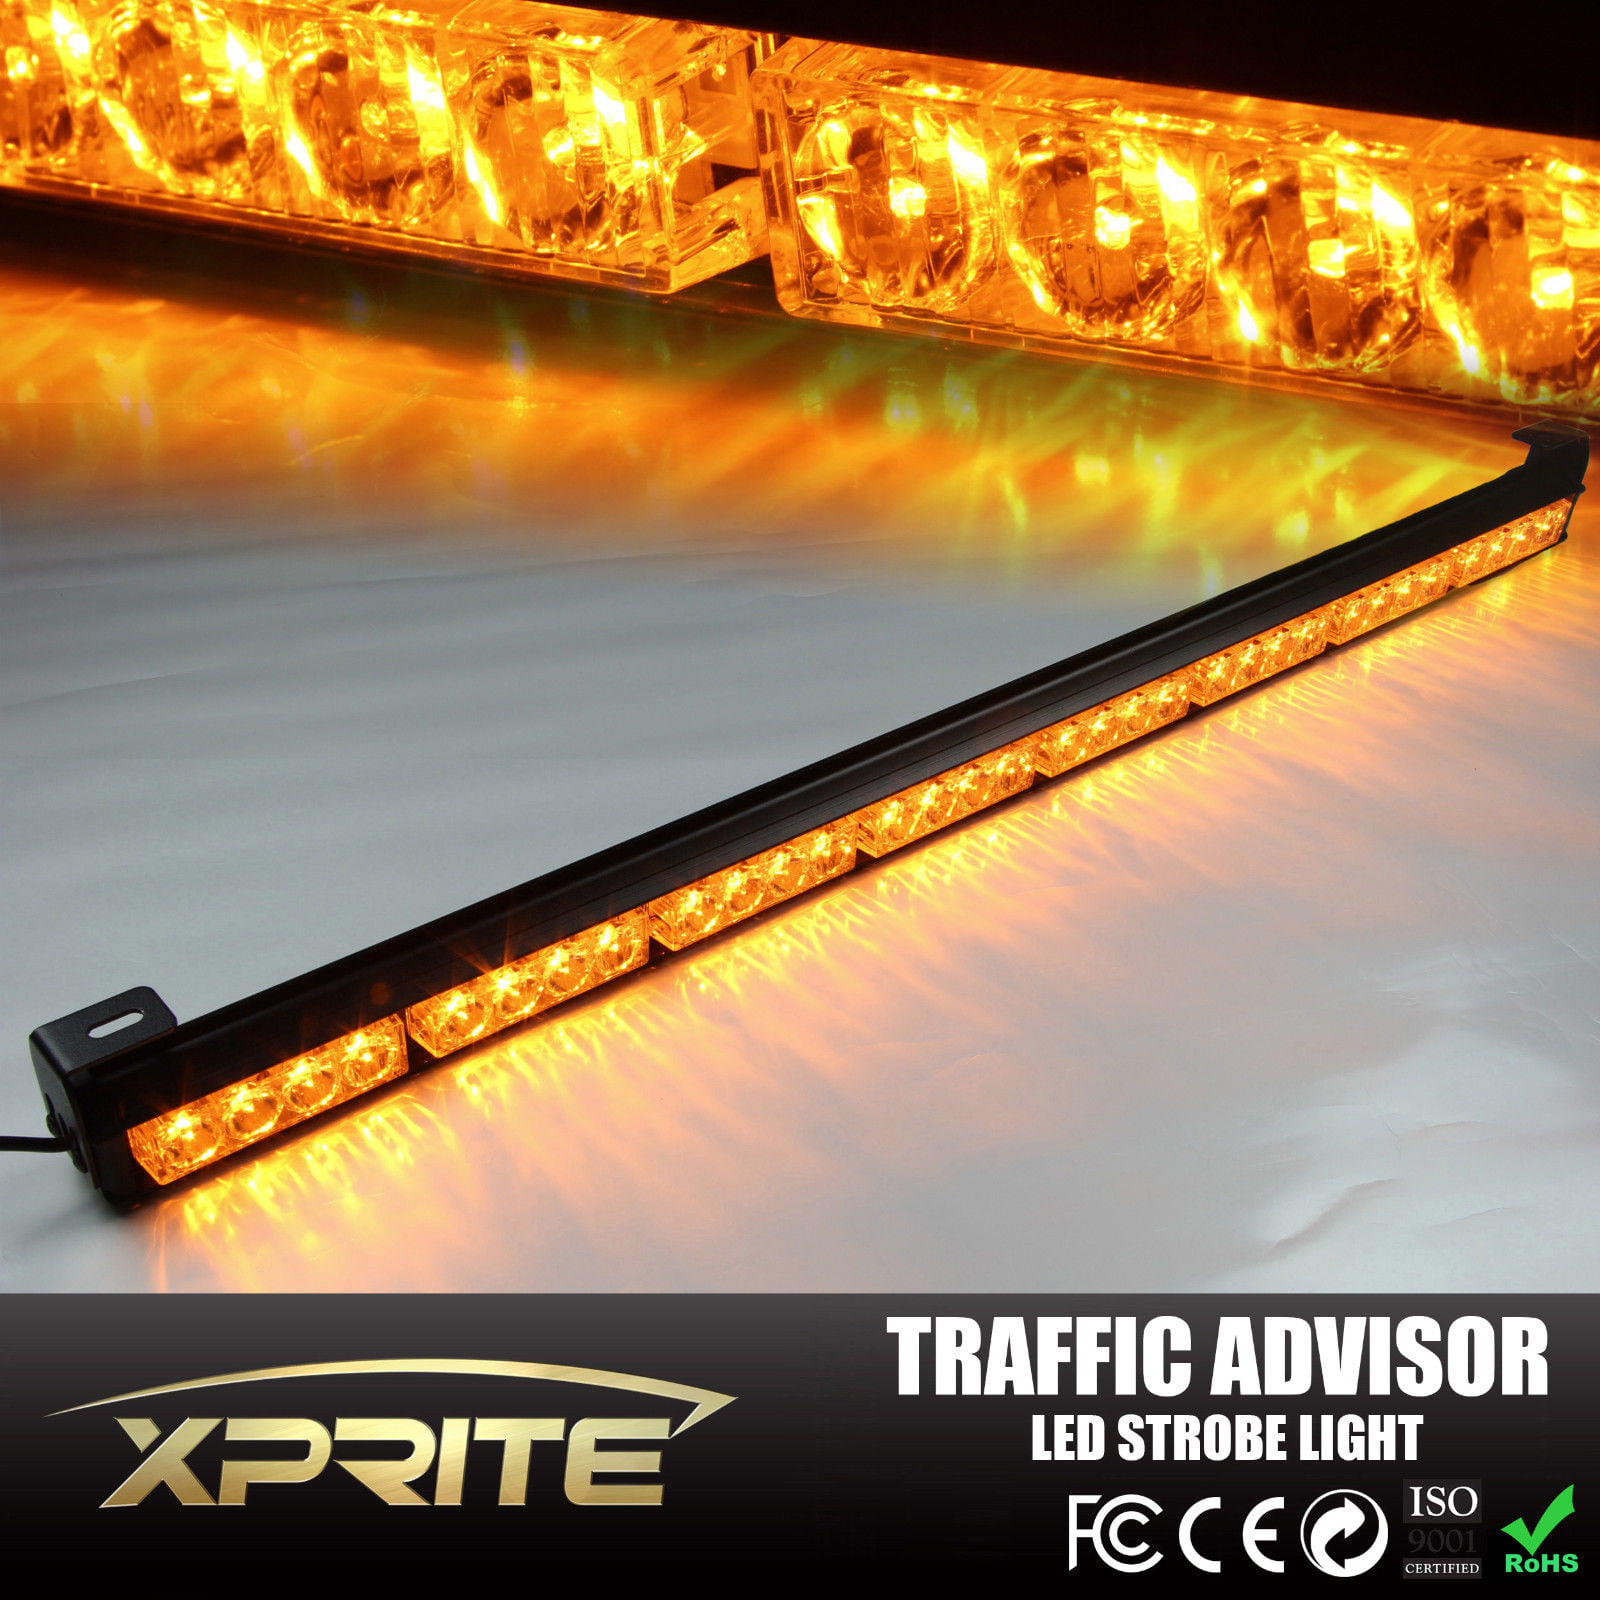 44" LED Traffic Adviser Emergency Beacon Warning Security Strobe Light Bar Amber 